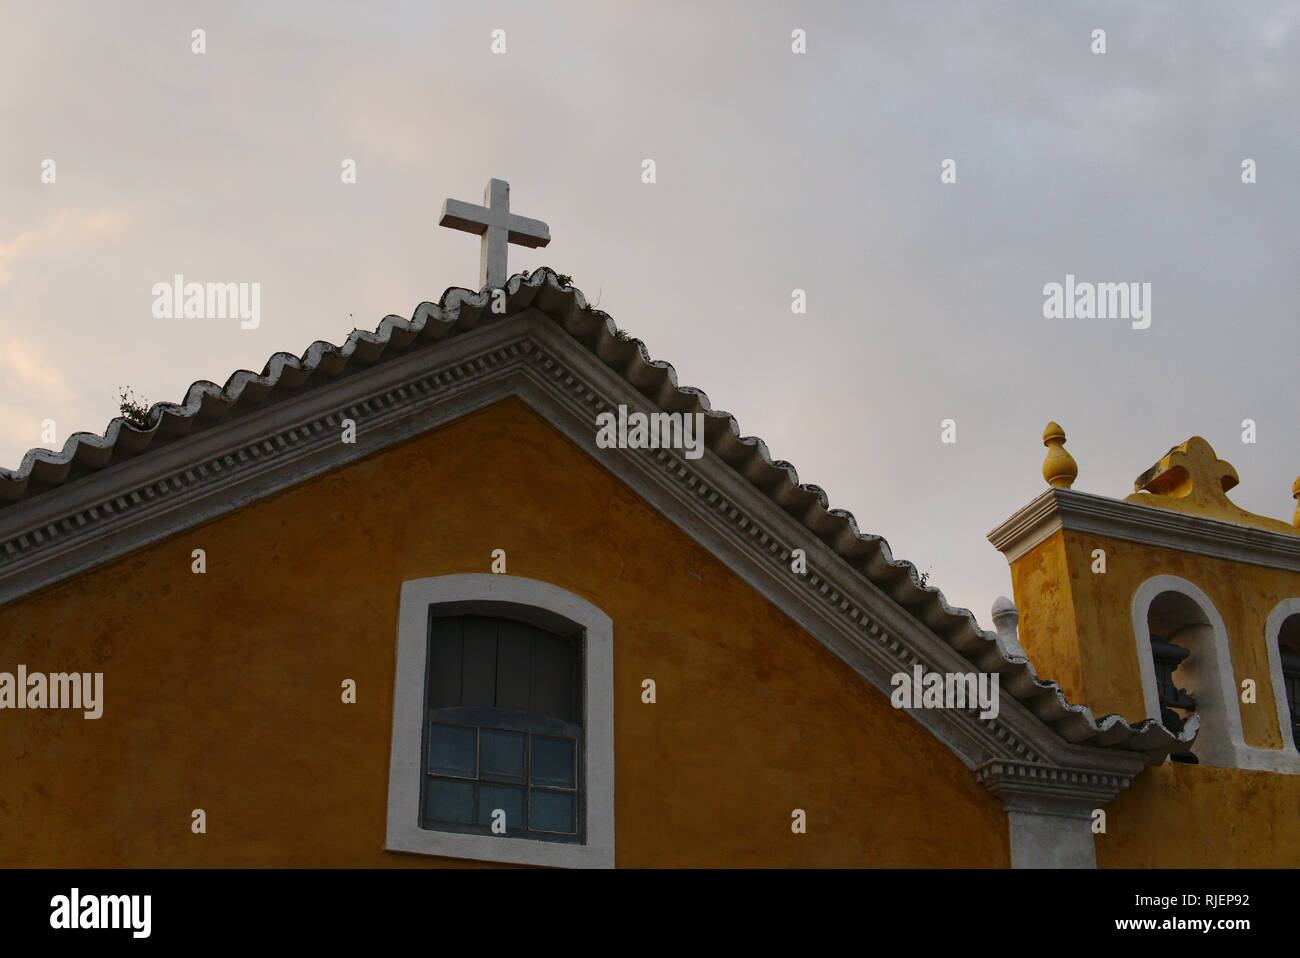 Haut d'une église catholique traditionnel en Amérique latine. Un bâtiment jaune avec une croix blanche. Banque D'Images